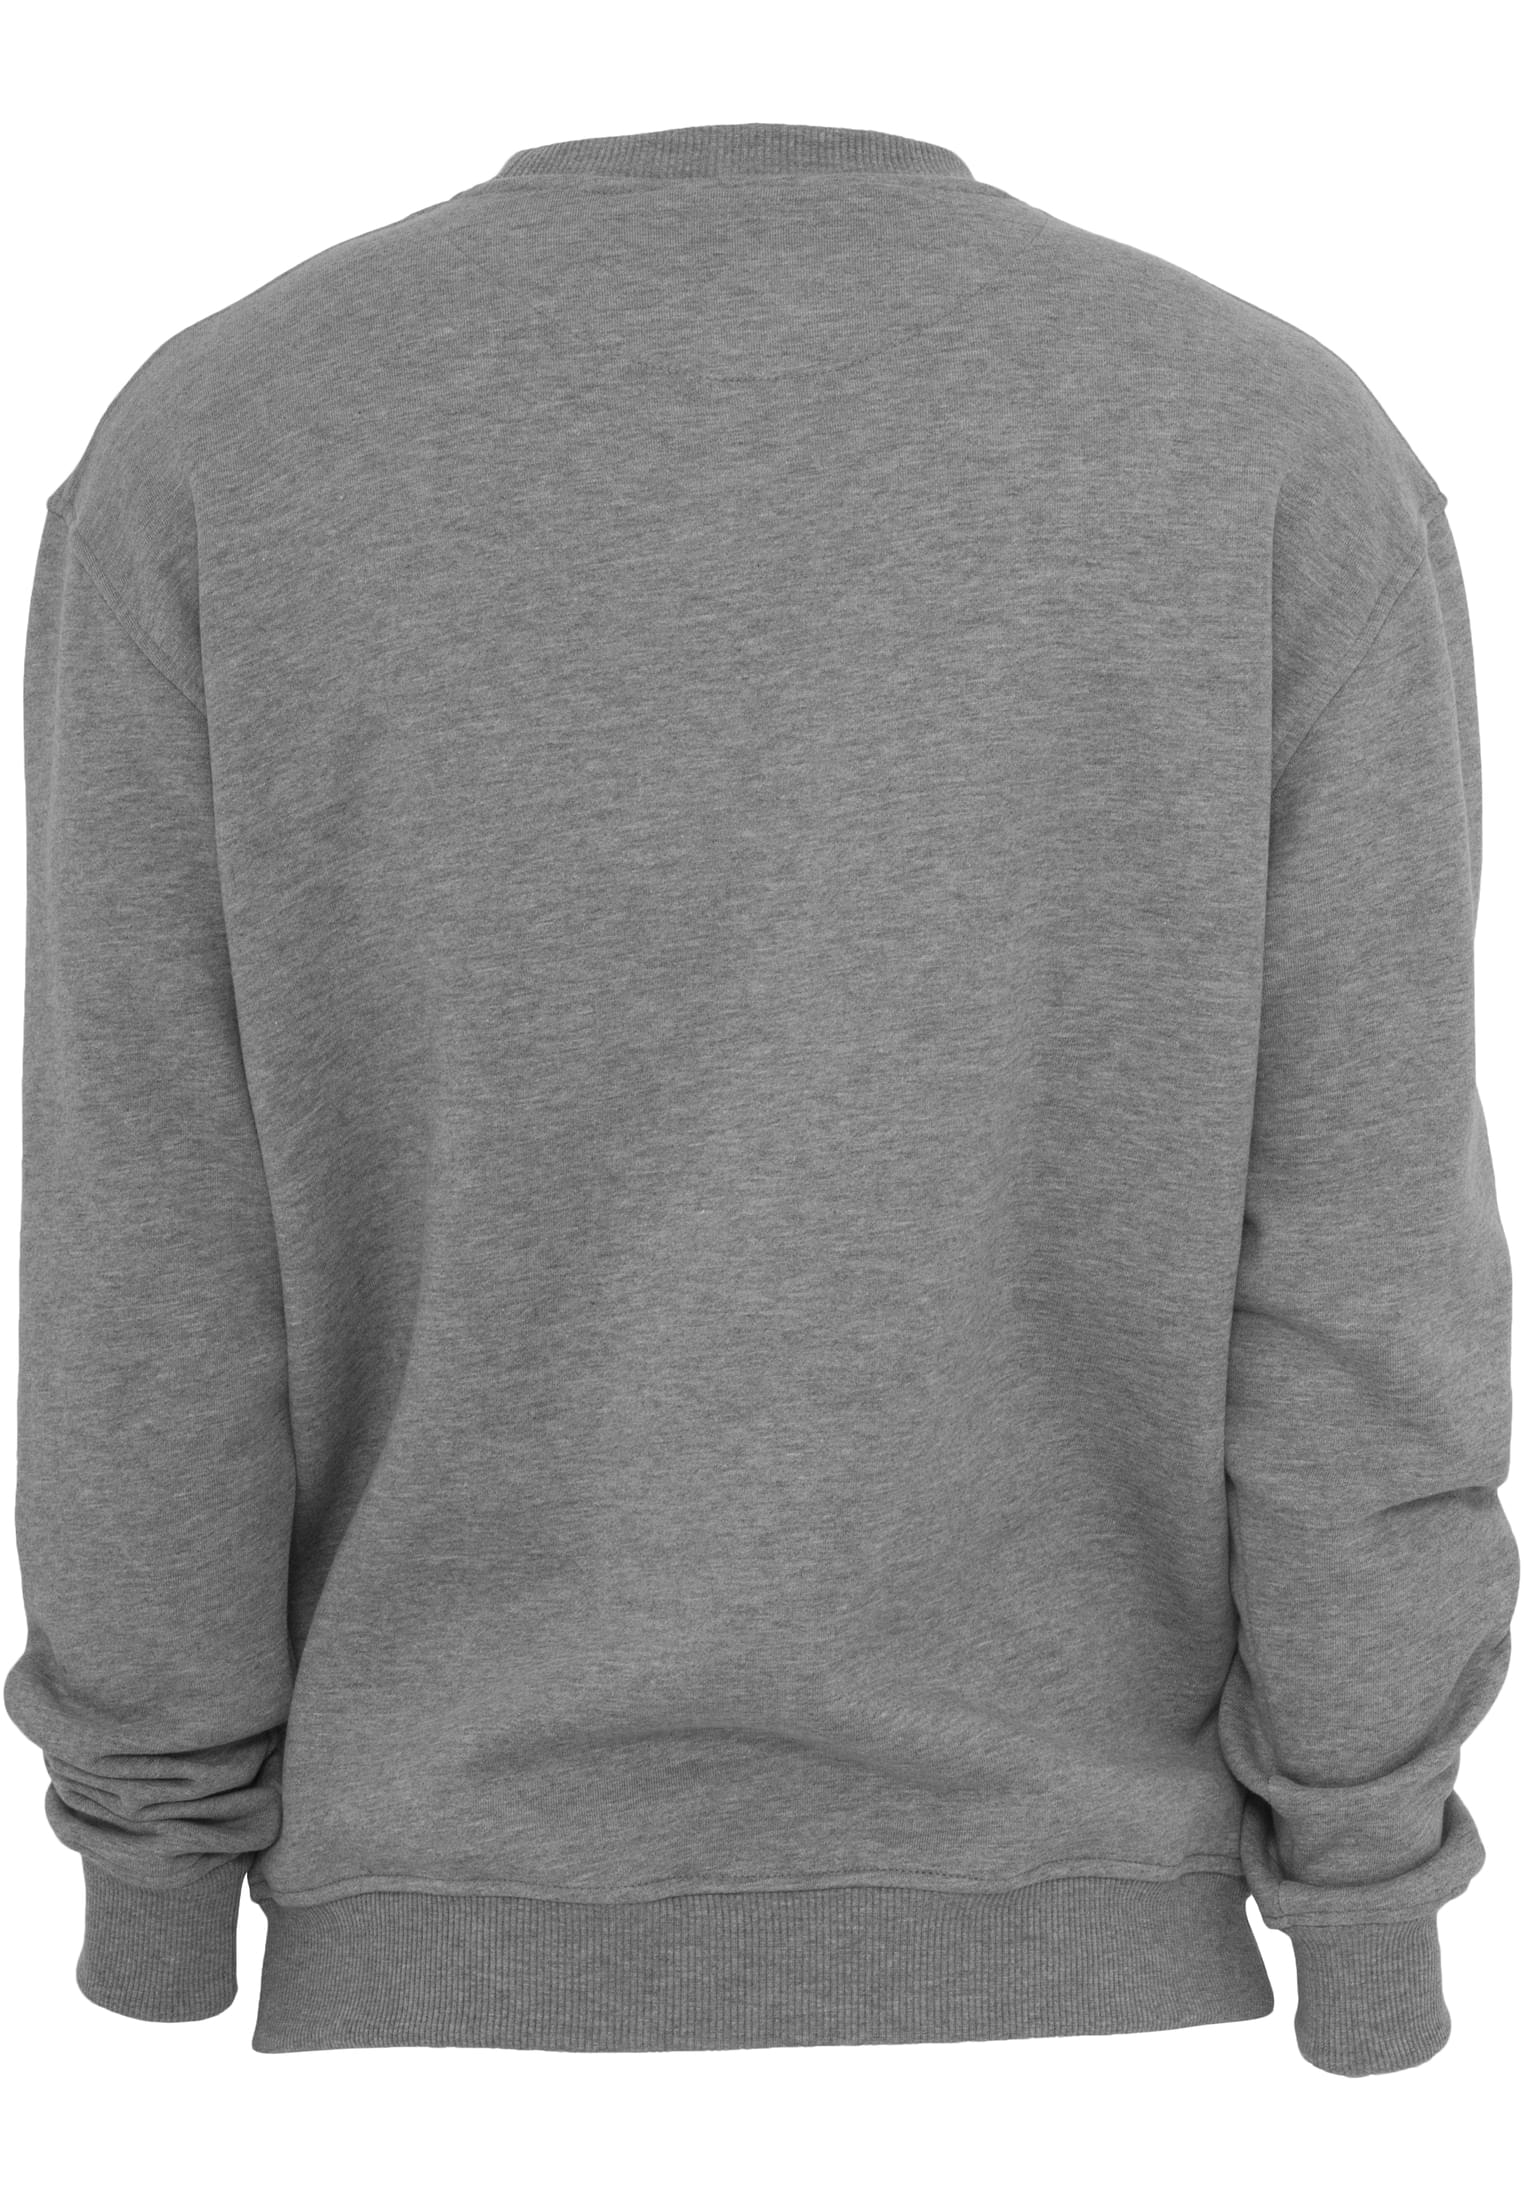 Crewnecks Crewneck Sweatshirt in Farbe grey